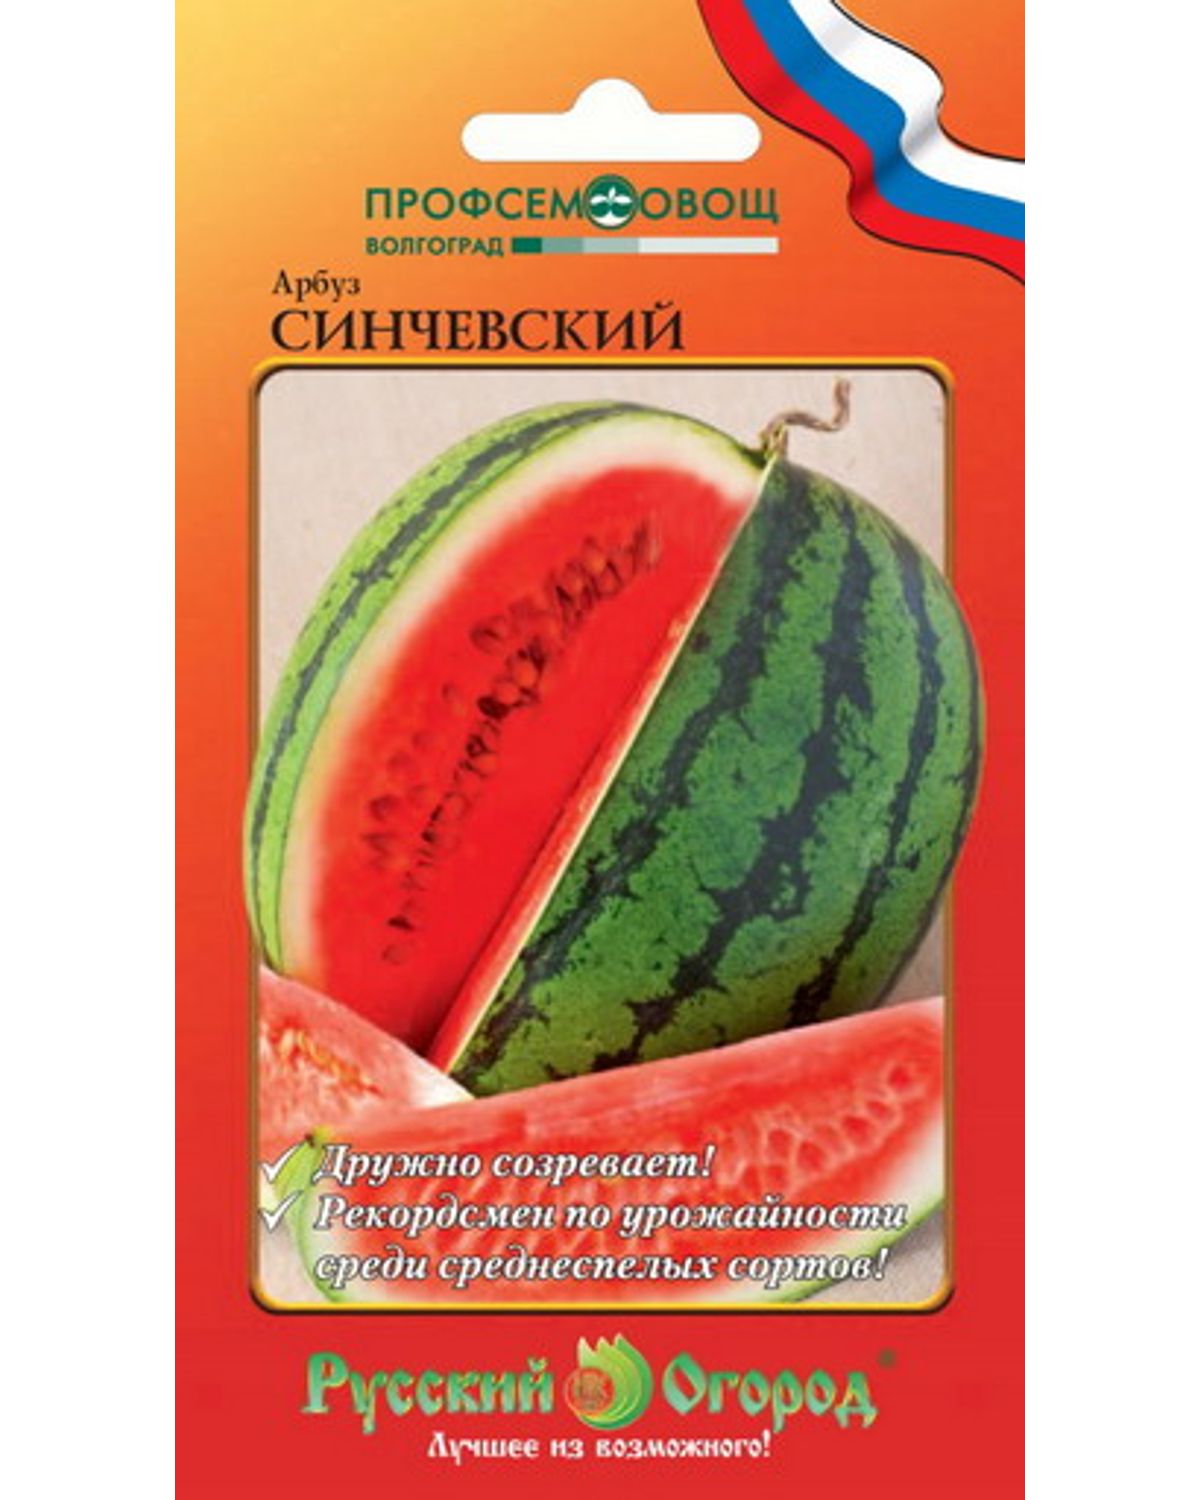 Семена ягод Русский огород 324417 Арбуз Синчевский 1 г - отзывы покупателейна Мегамаркет